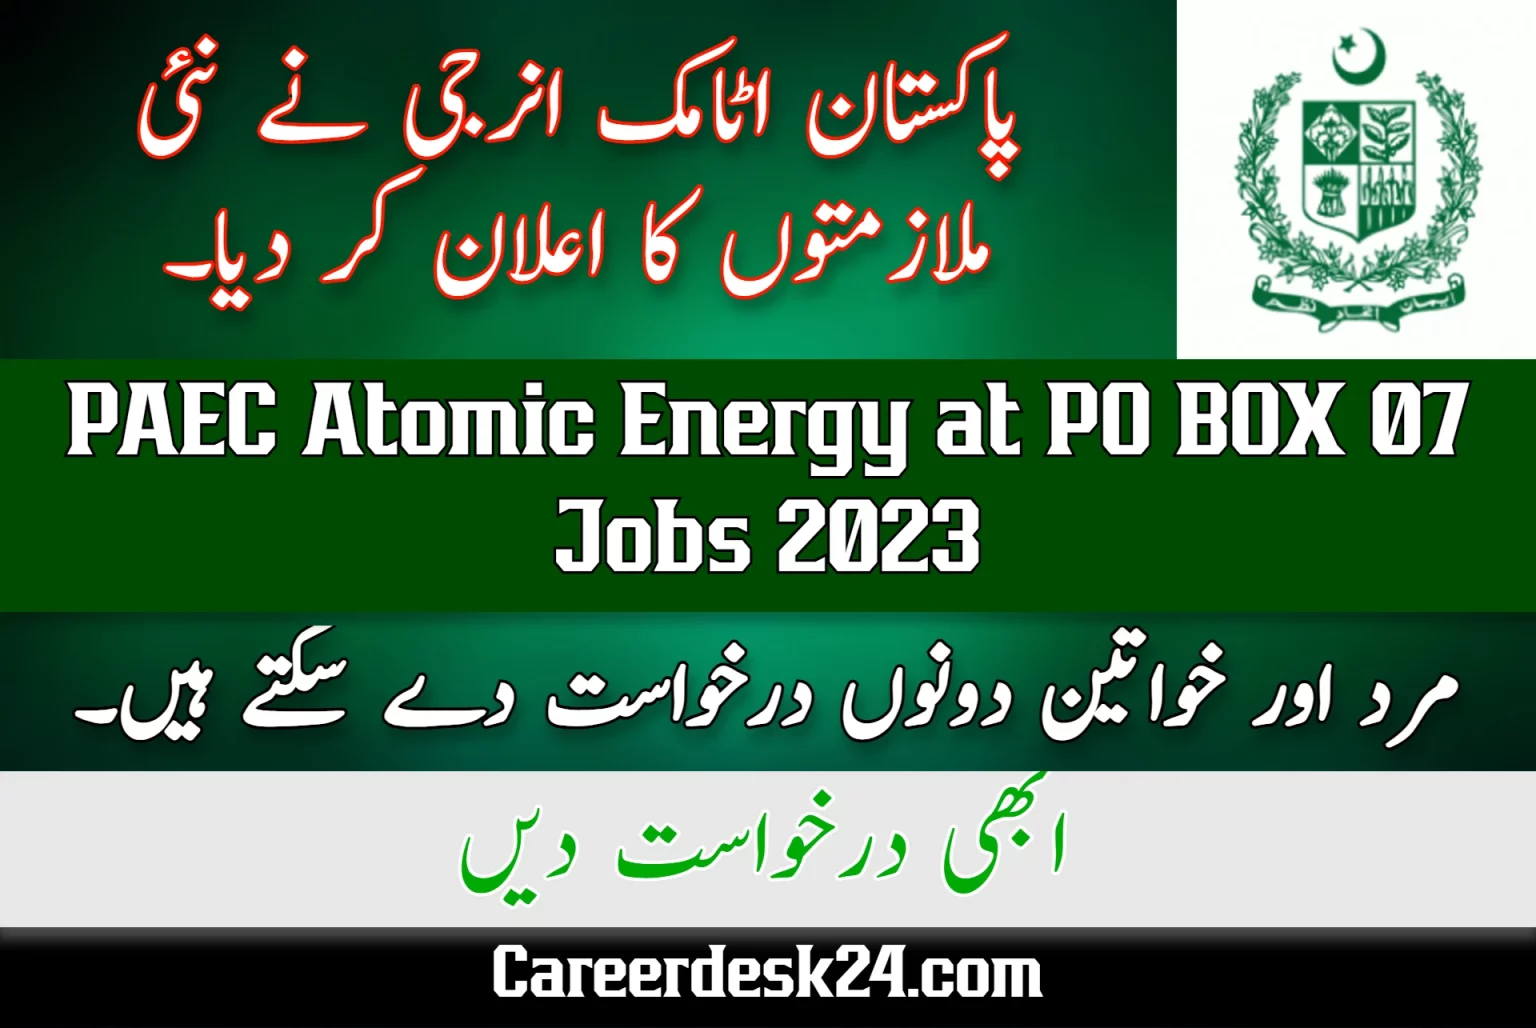 PAEC Atomic Energy at PO BOX 07 Jobs 2023